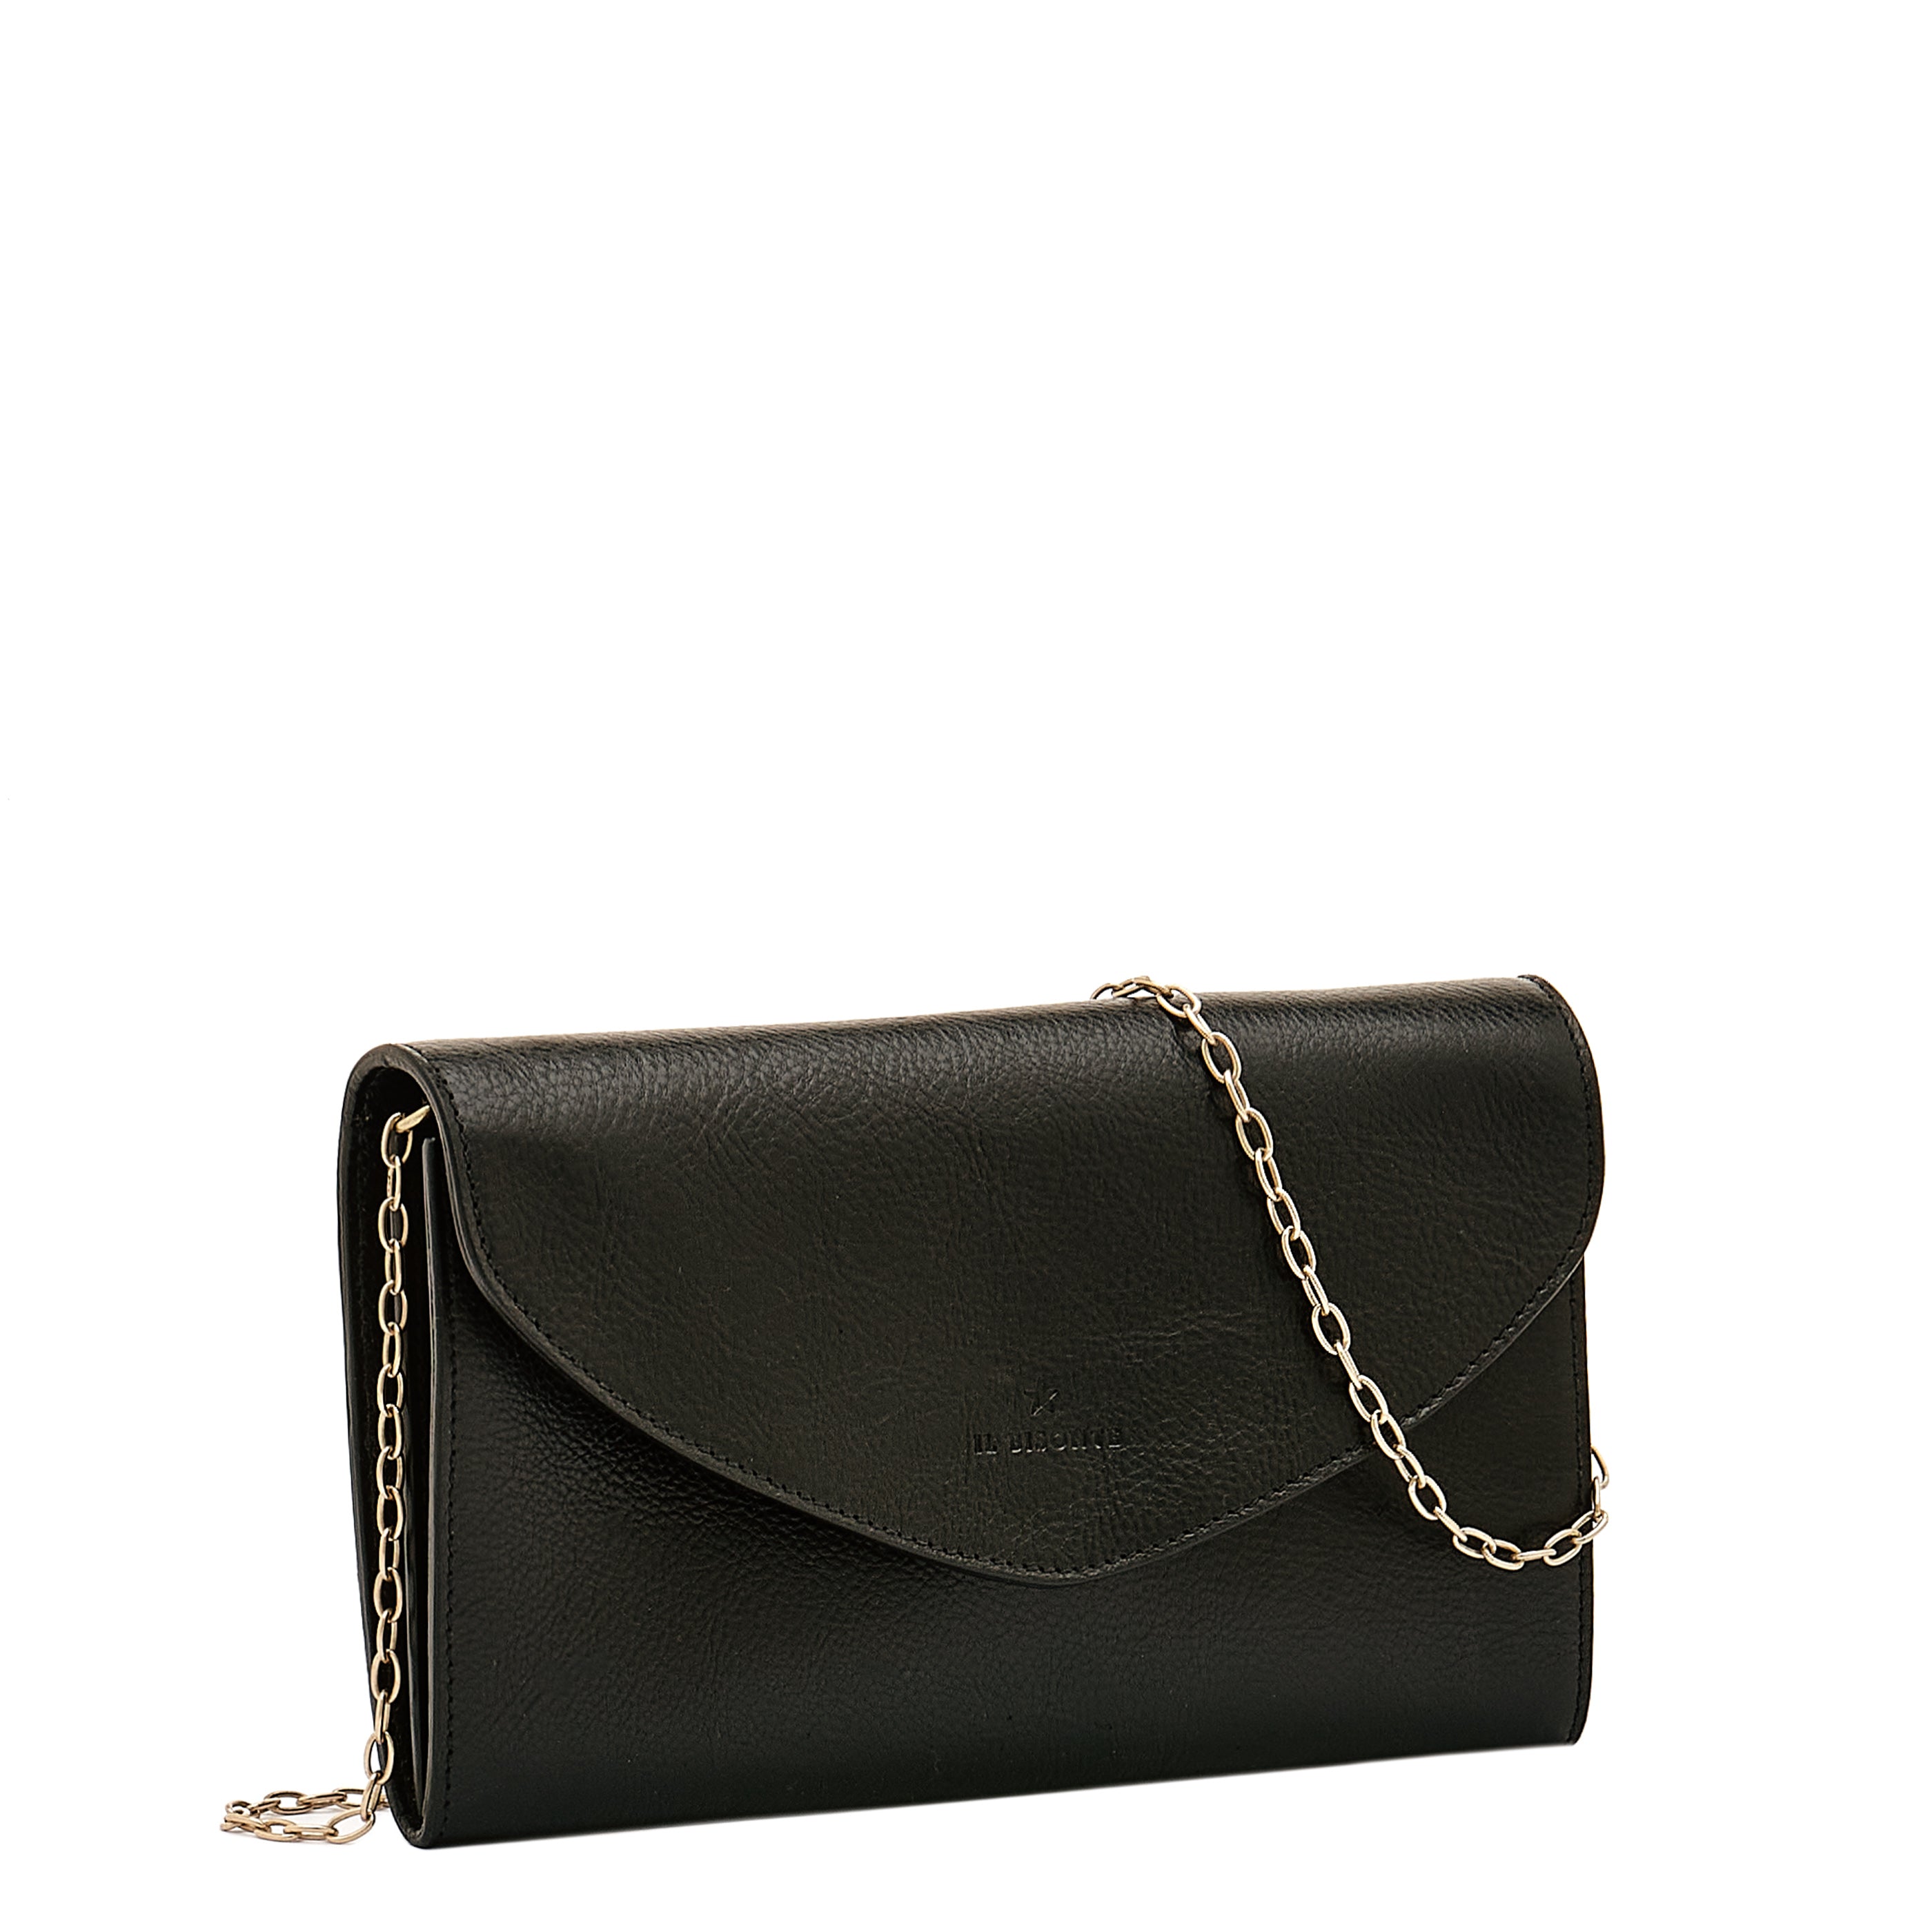 amazon.com Dexmay Women Envelope Clutch Handbag Medium Saffiano Leather  Foldover Clutch Purse Black: Handbags: Amazon.com | ShopLook